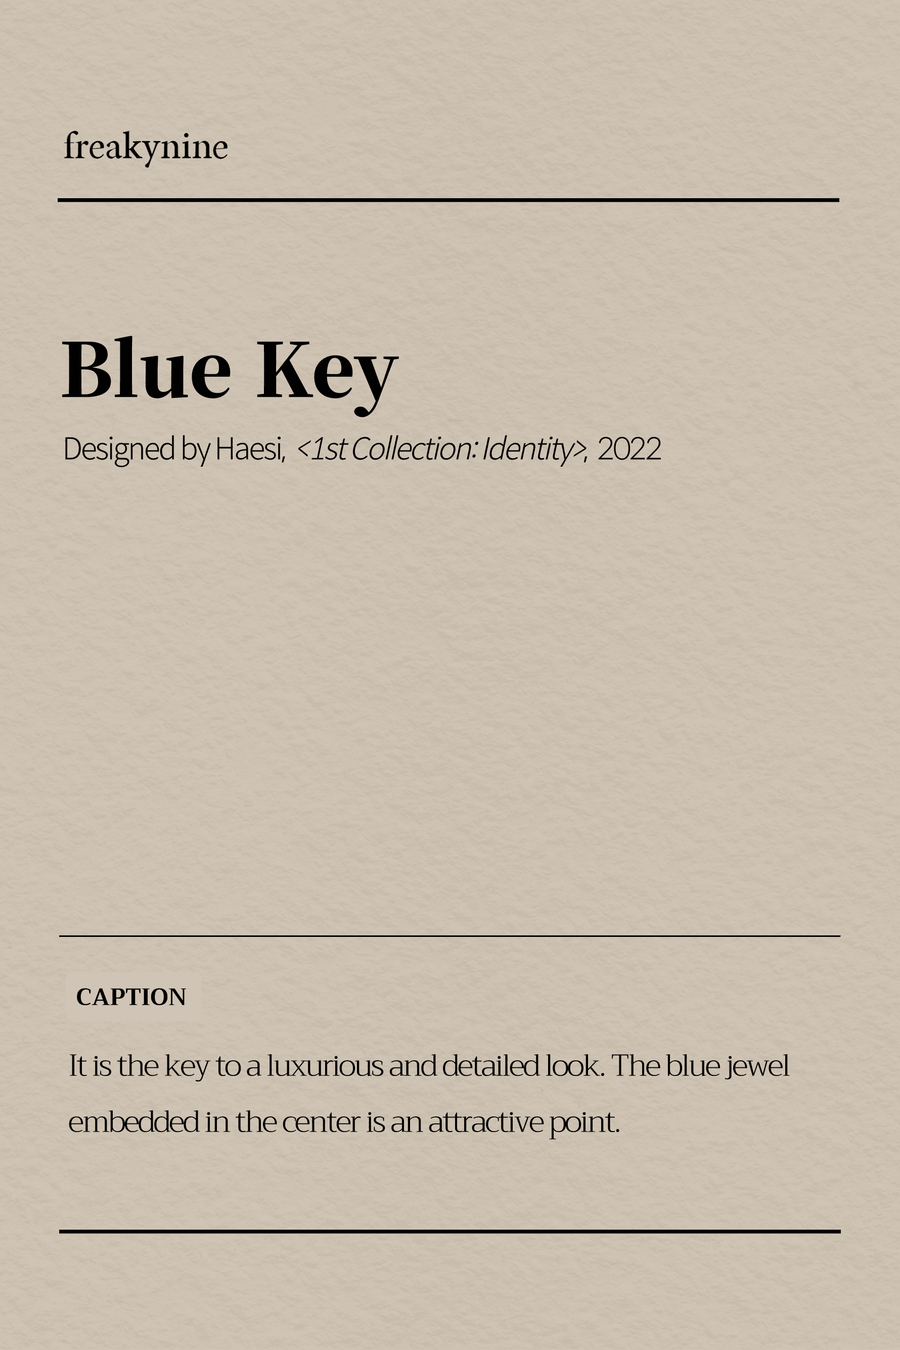 (Haesi) Blue Key (2EA) - freakynine